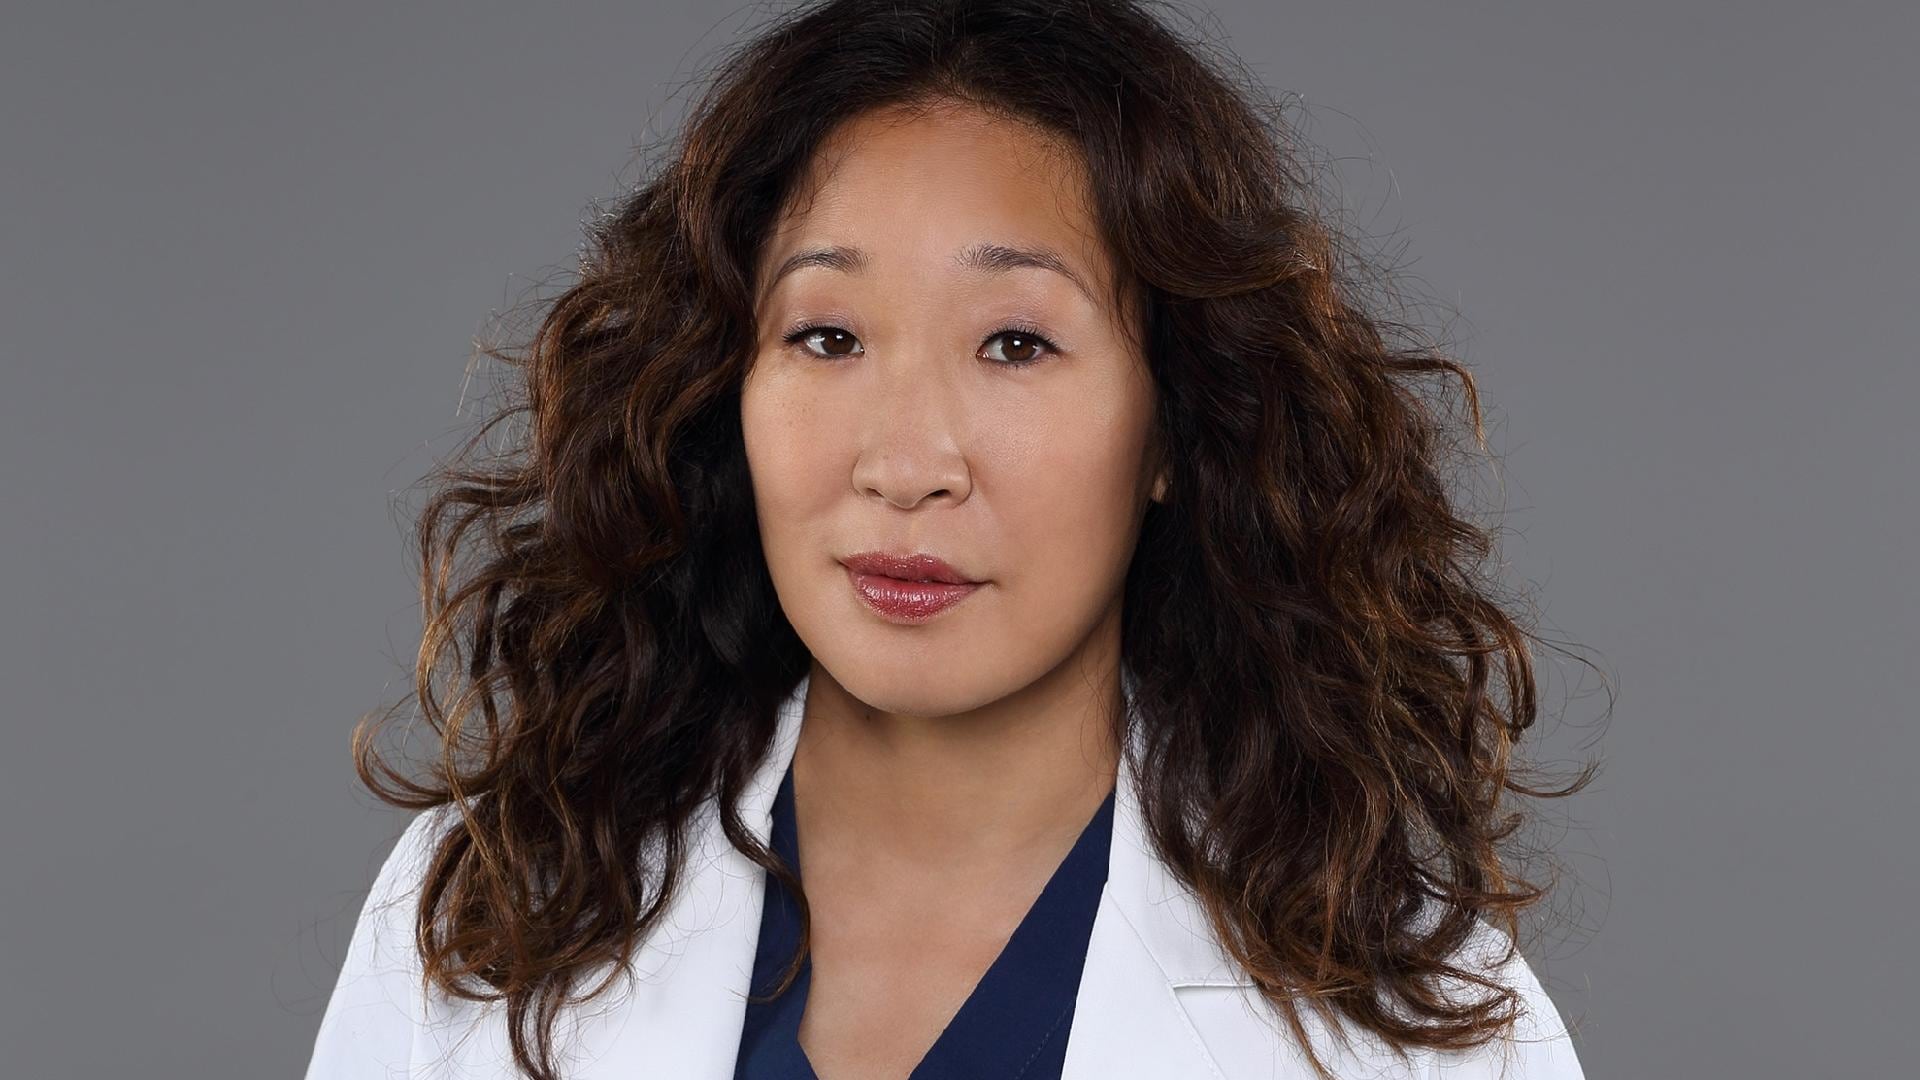 Grey’s Anatomy: Esta foi a forma como Cristina Yang participou do episódio 17x10; confira